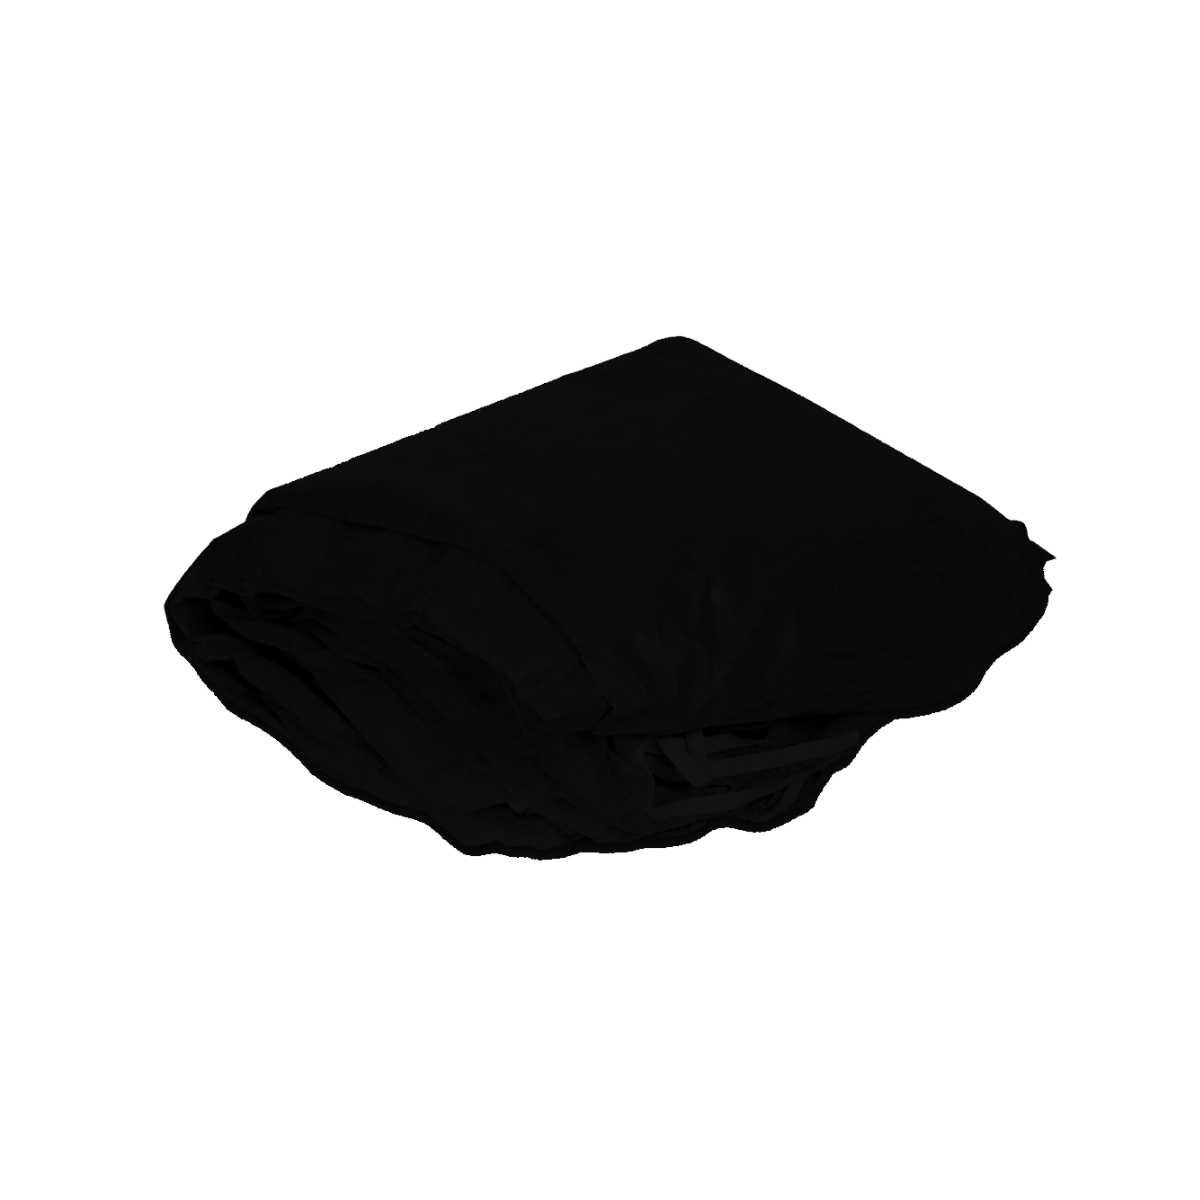 Чехол на Кушетку, спанбонд, на резинке, размер 210*90*15 см 10 шт. цвет: чёрный 